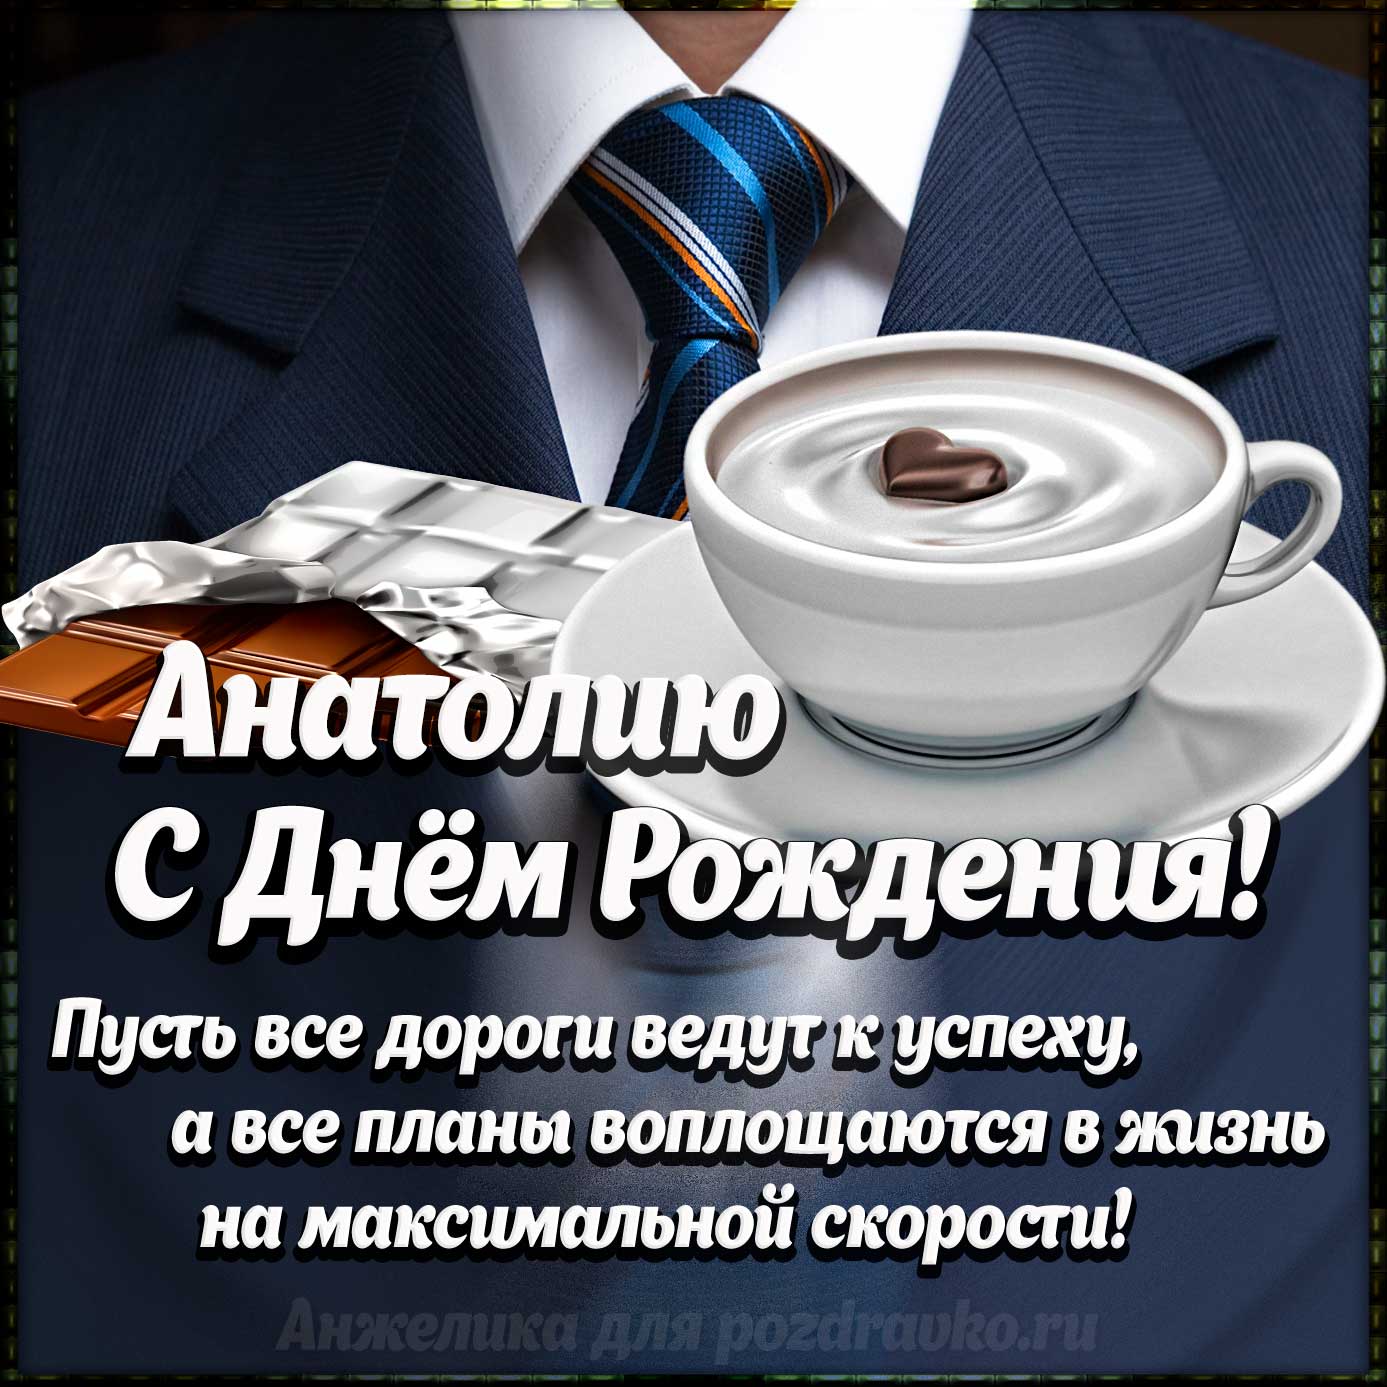 Открытка - Анатолию с Днем Рождения с галстуком, кофе и пожеланием. Скачать бесплатно или отправить картинку.